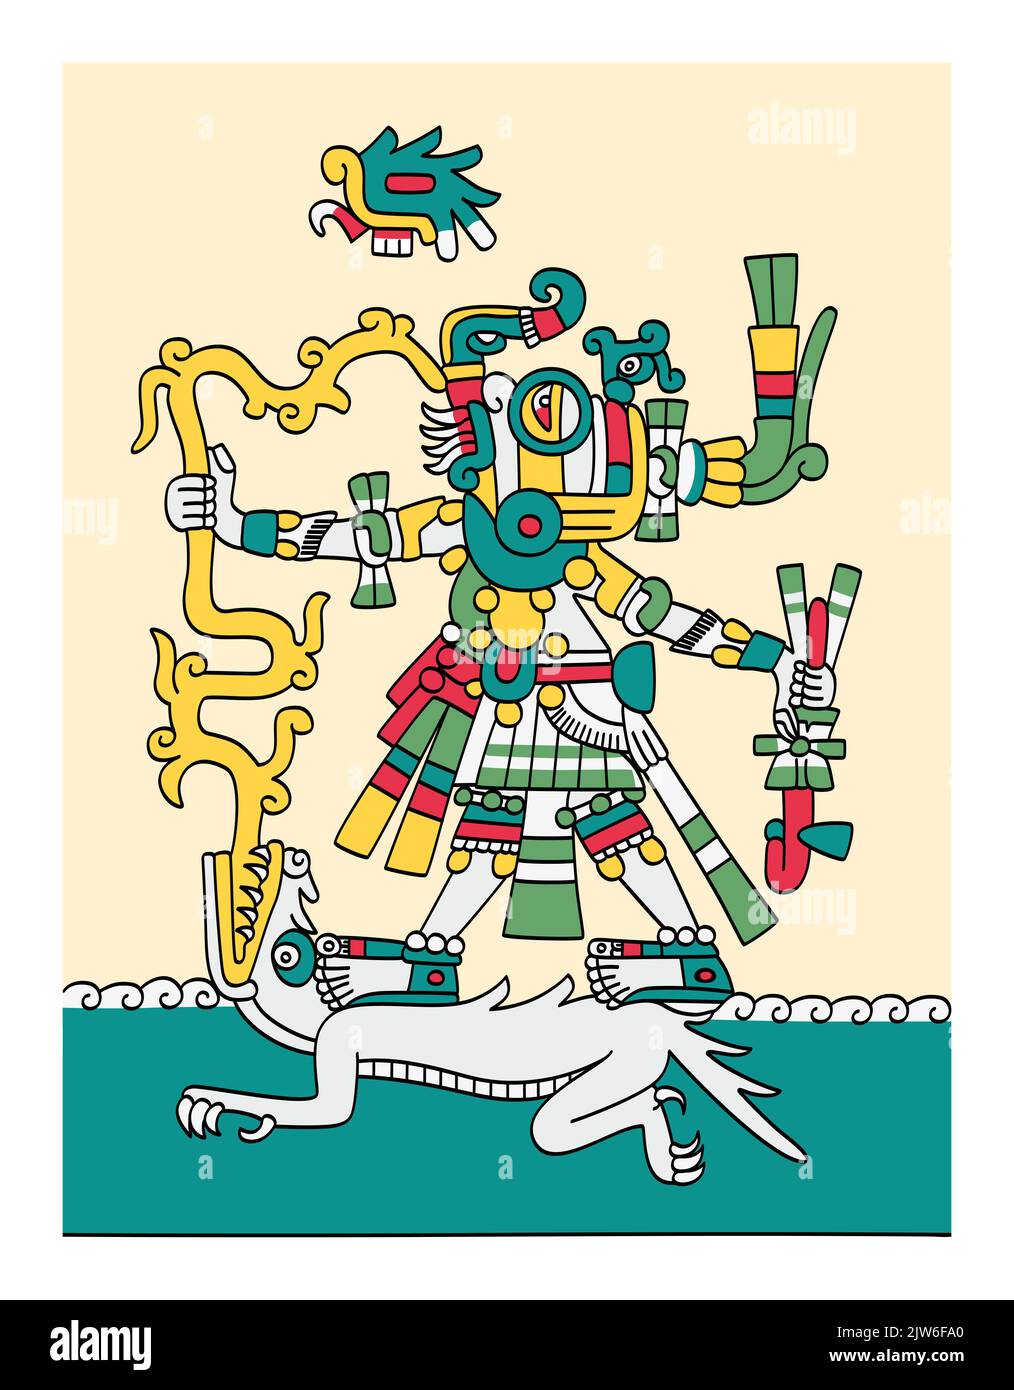 Tlaloc dios azteca de lluvia, fertilidad terrenal y agua, dador de vida y sustento. Representado con ojos goggle, colmillos, relámpagos y criaturas acuáticas. Foto de stock